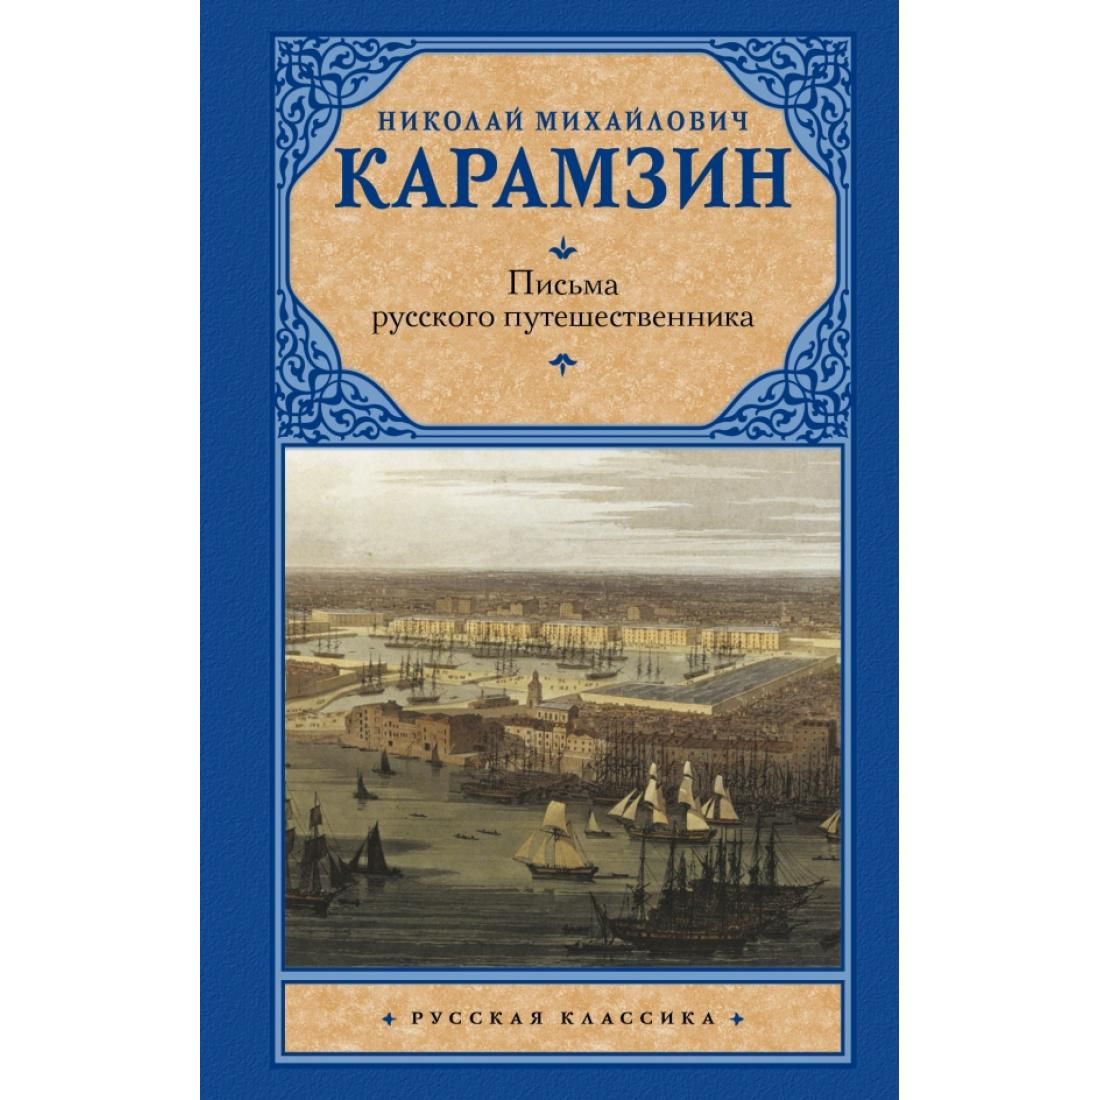 Письма русского путешественника Карамзин 18 век